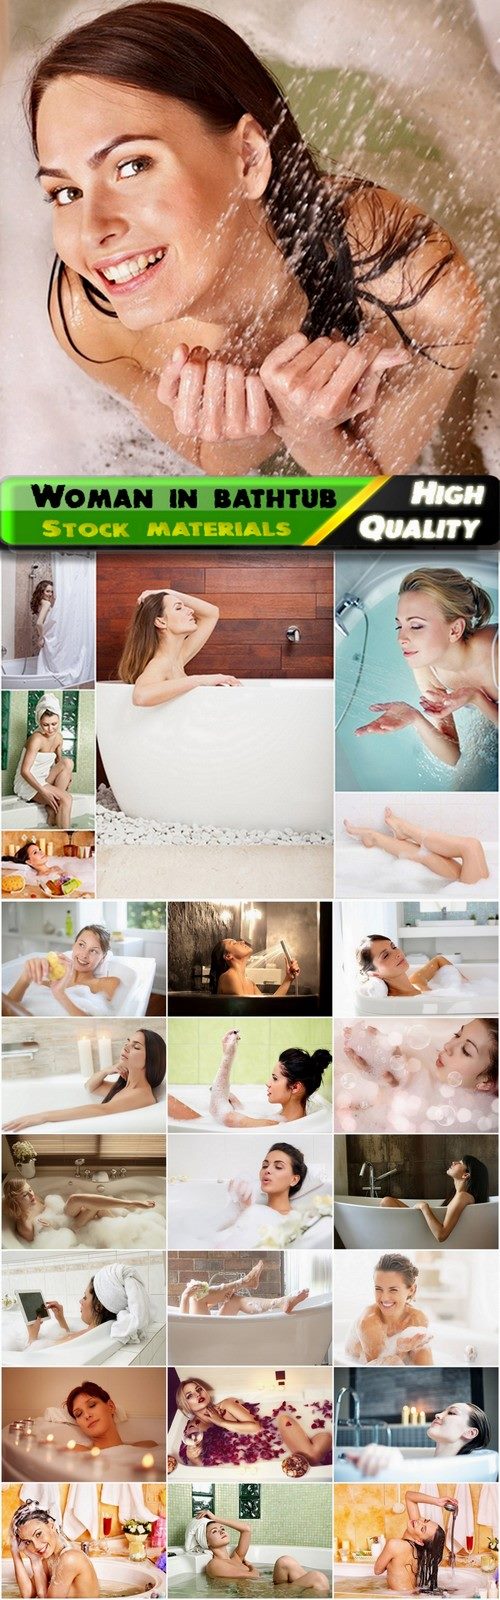 Woman in bathroom with foam in bathtub - 25 HQ Jpg